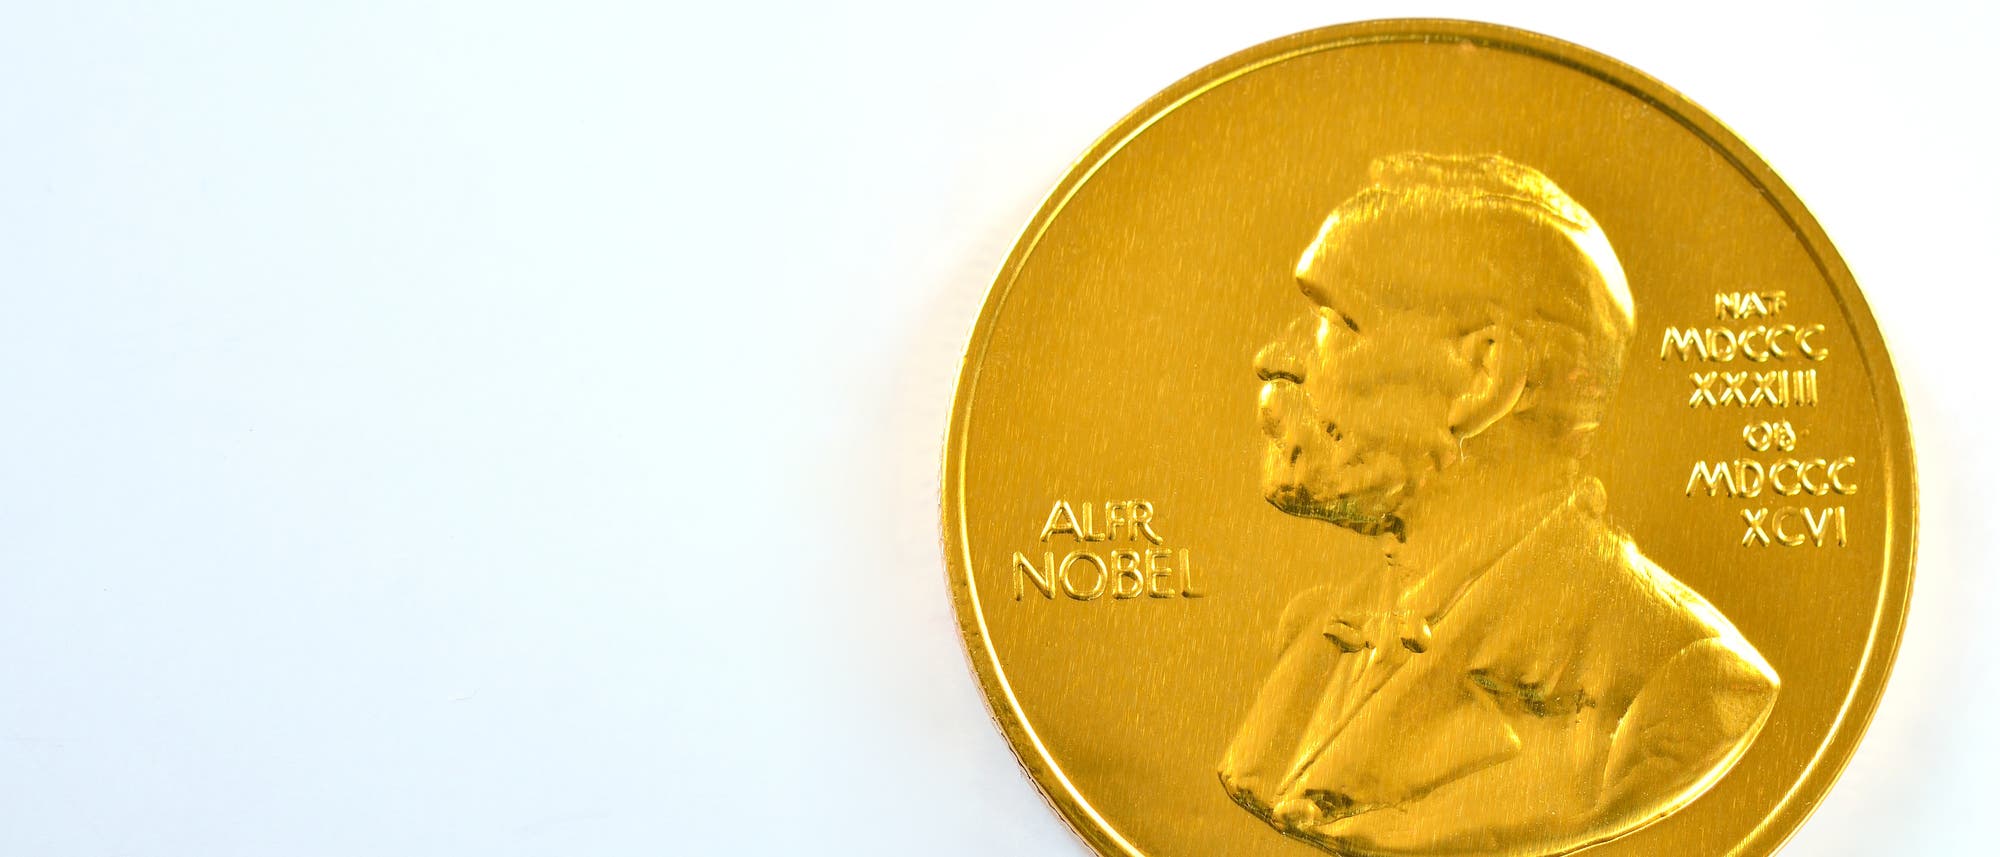 Die goldene Medaille mit dem Profil von Alfred Nobel erhalten jedes Jahr alle Nobelpreisträger